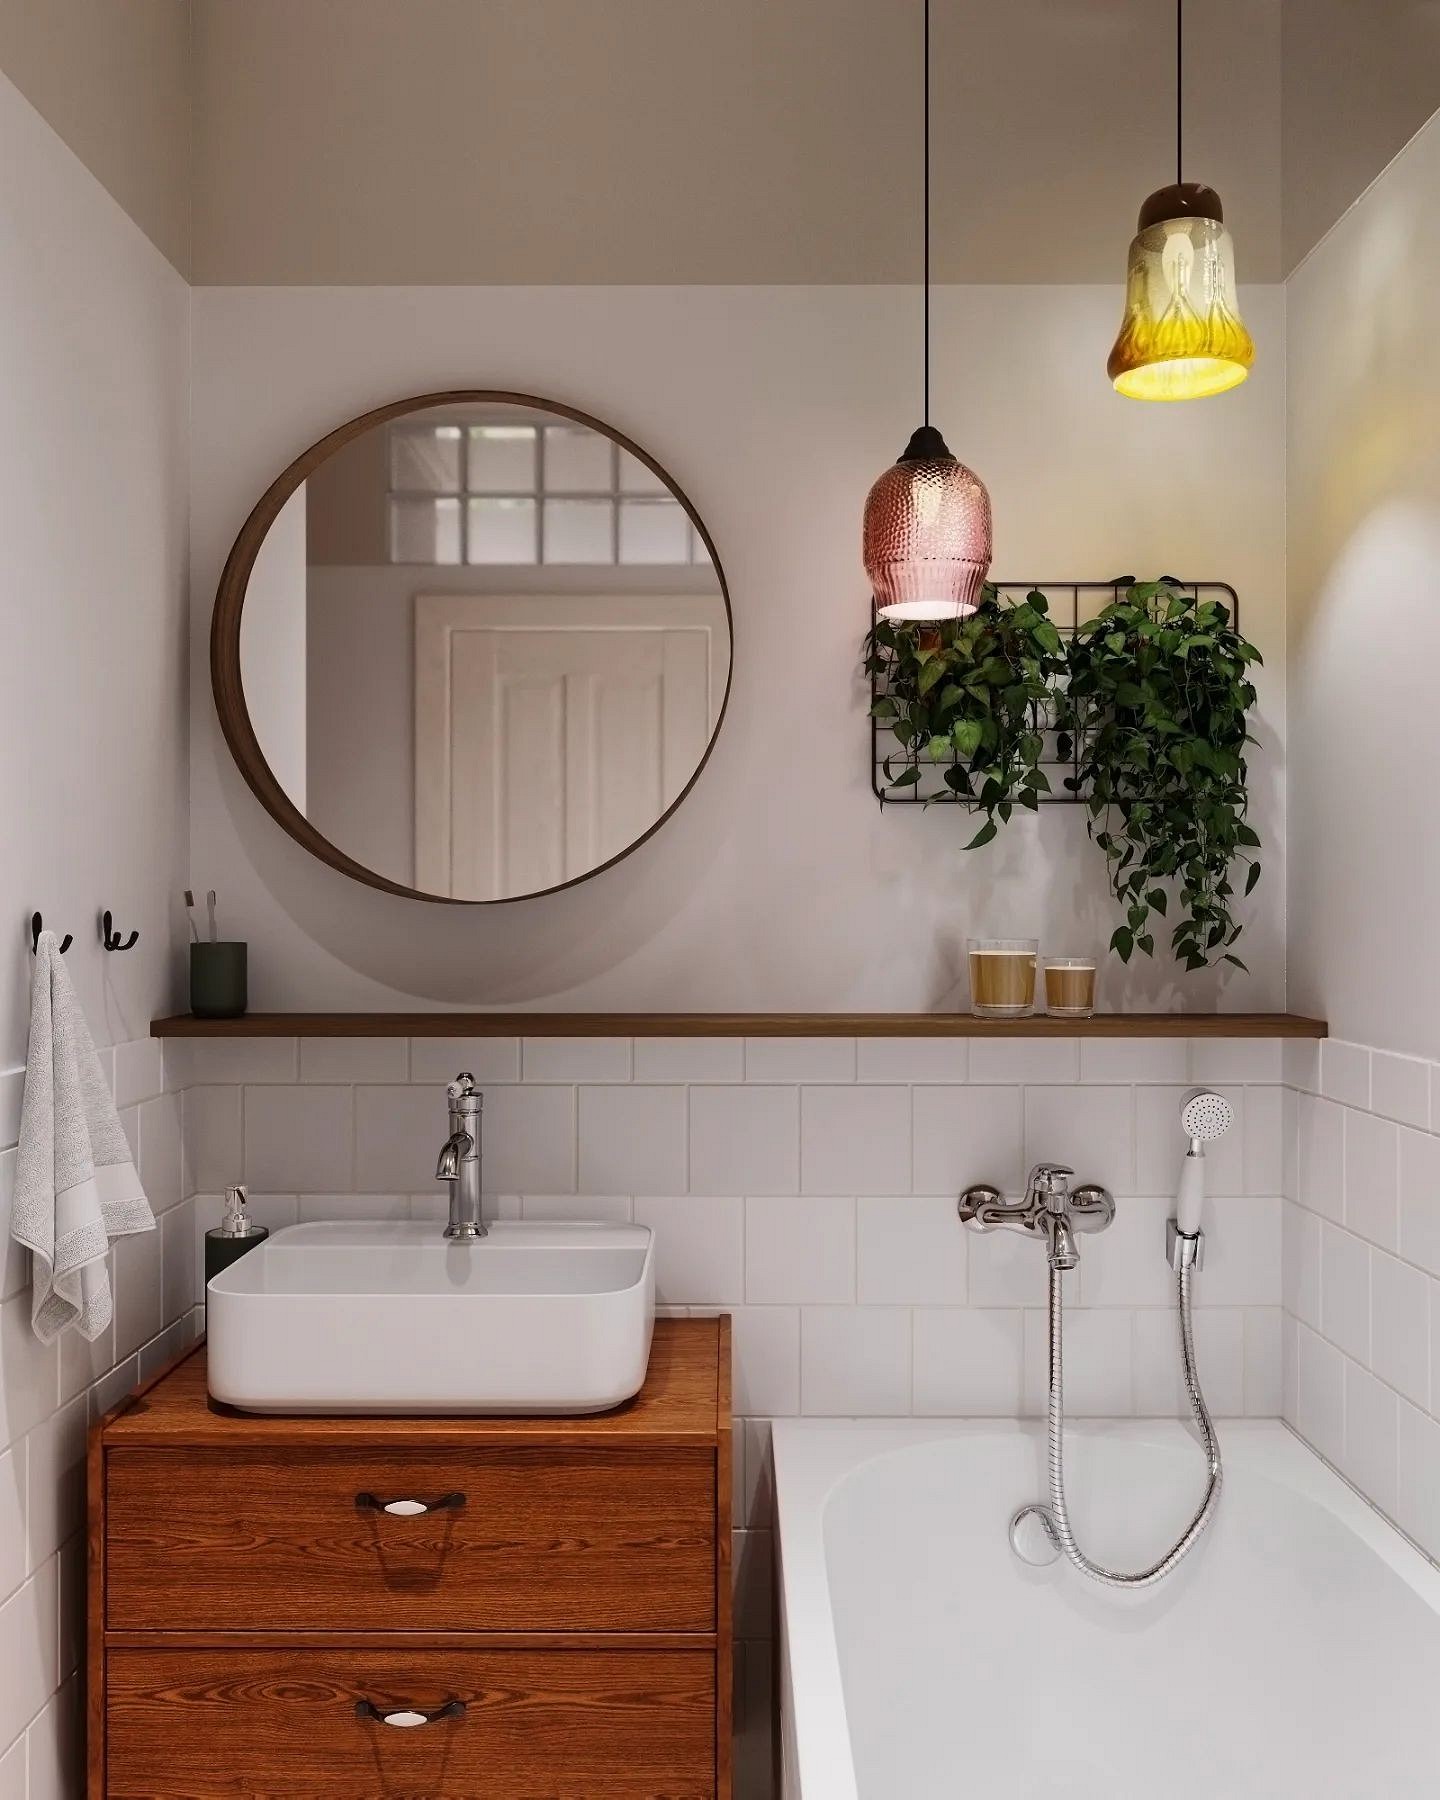 9 необычных решений для ванной комнаты из проектов дизайнеров11